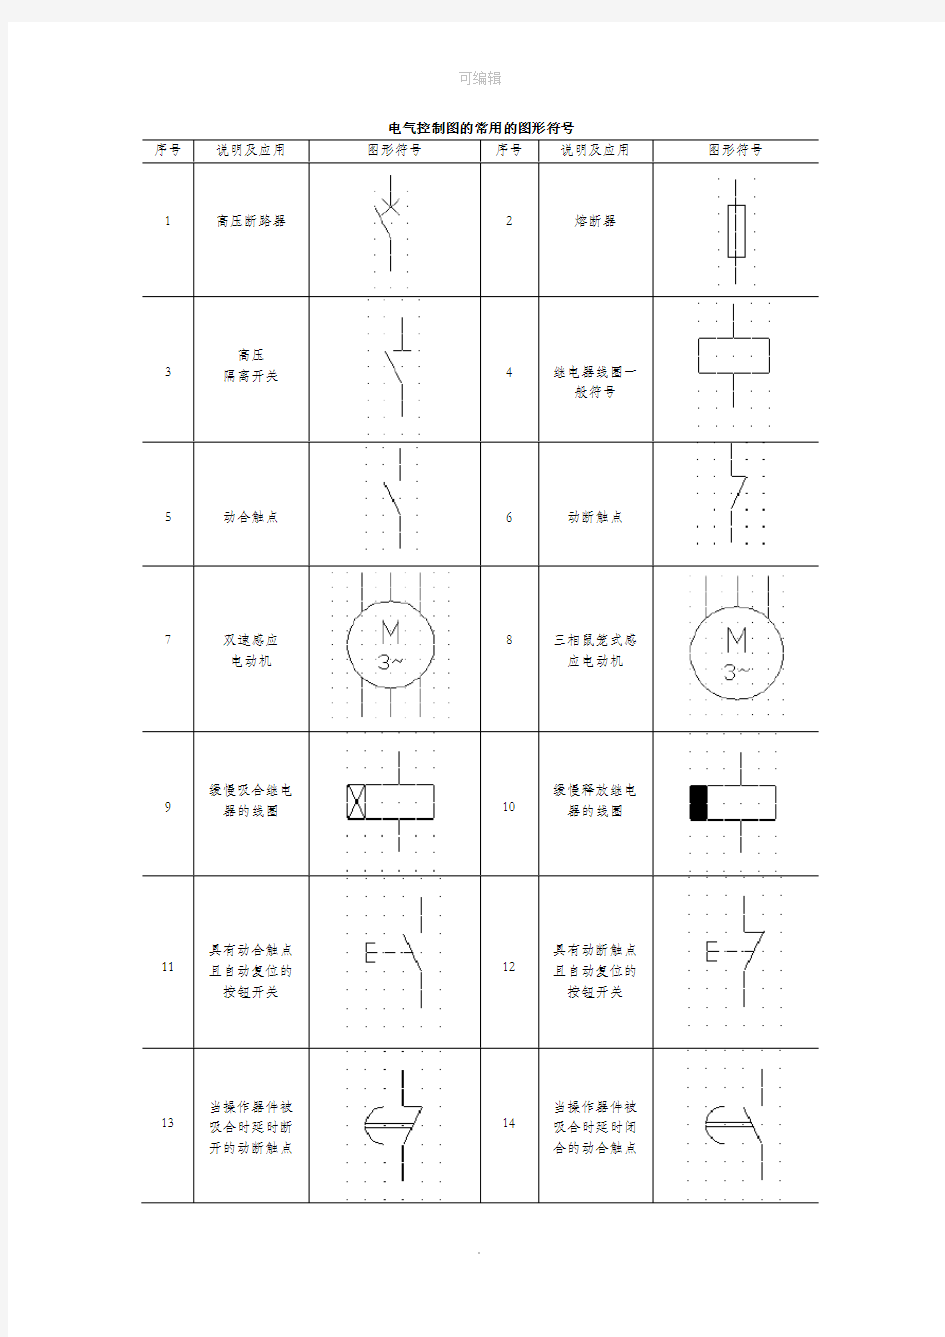 电气控制图的常用的图形符号